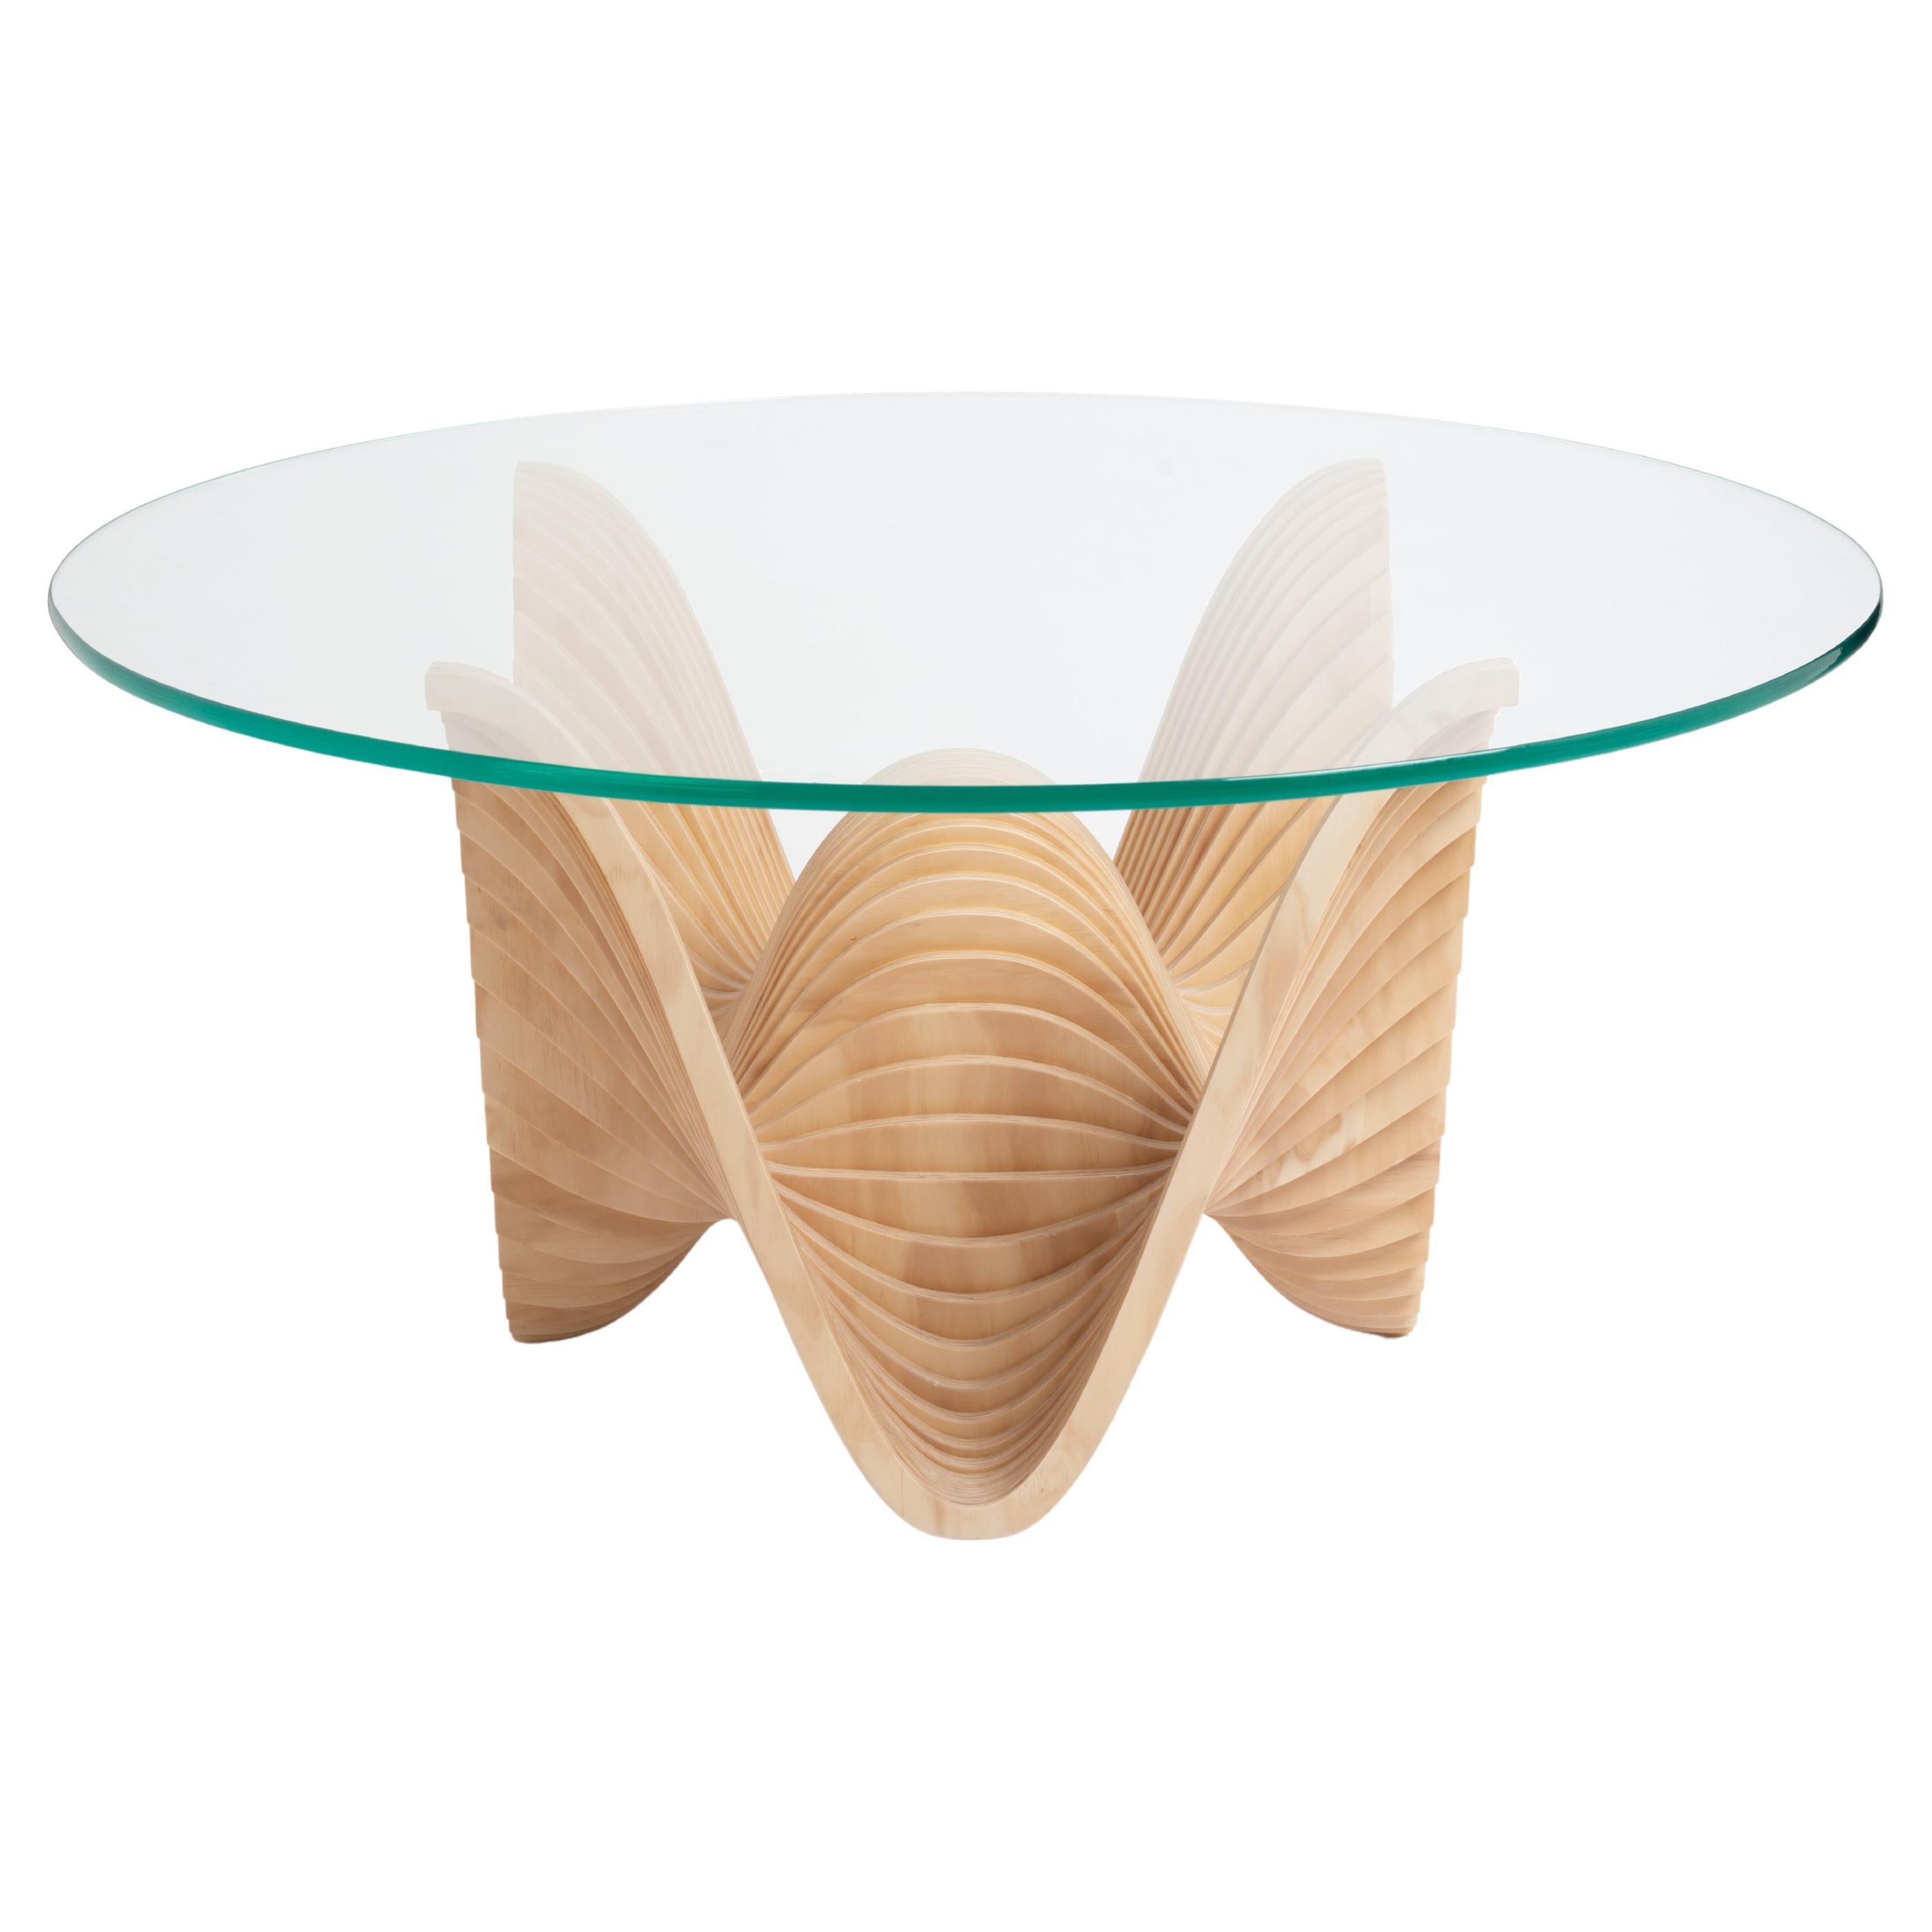 Candy Dining Table Medium von Piegatto, ein skulpturaler Contemporary Tisch